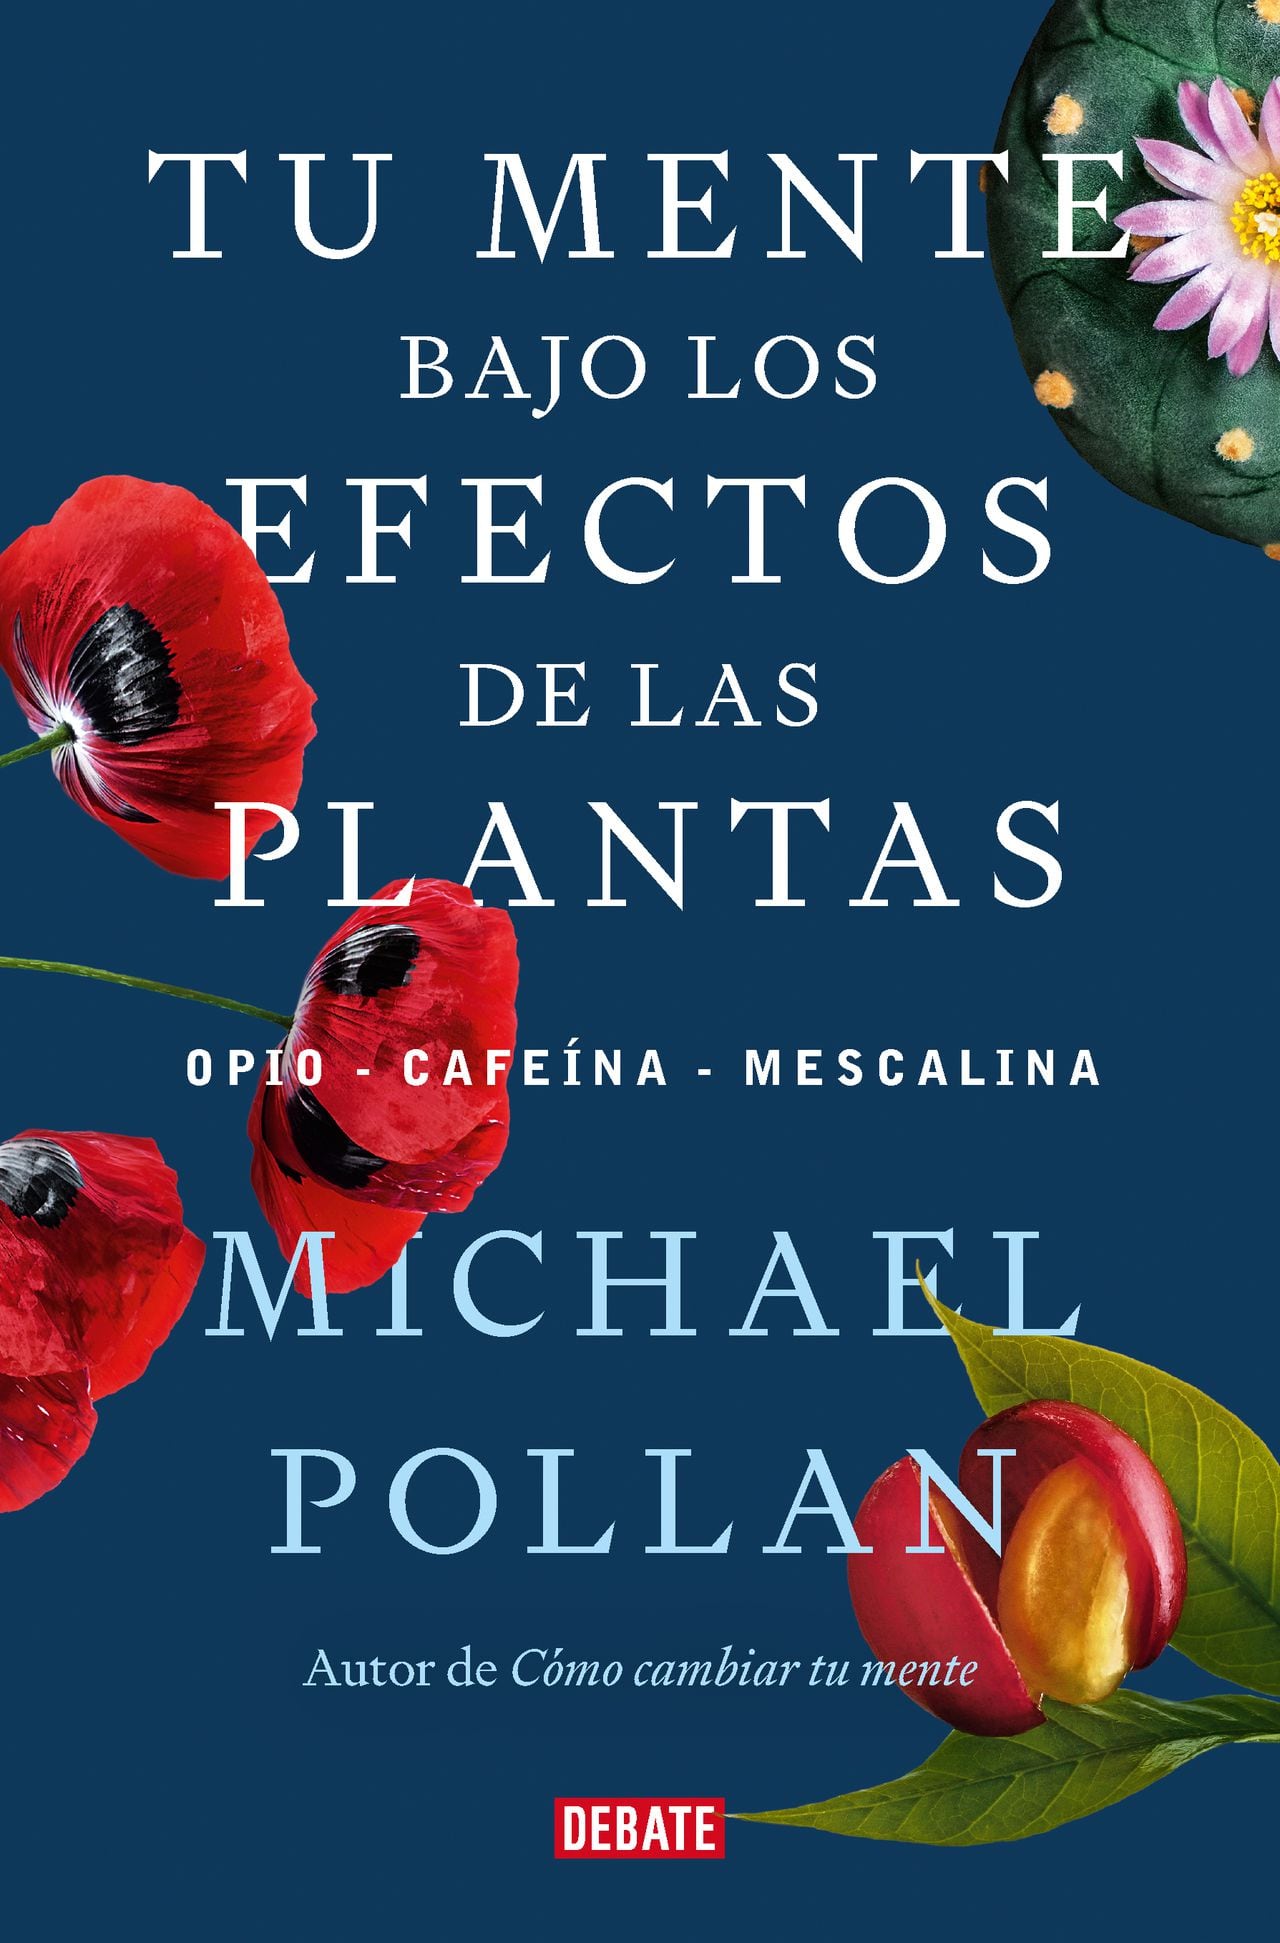 'Tu mente bajo los efectos de las plantas: opio, cafeína, mescalina'. Publicado en 2023 por el sello Debate de Penguin Random House.